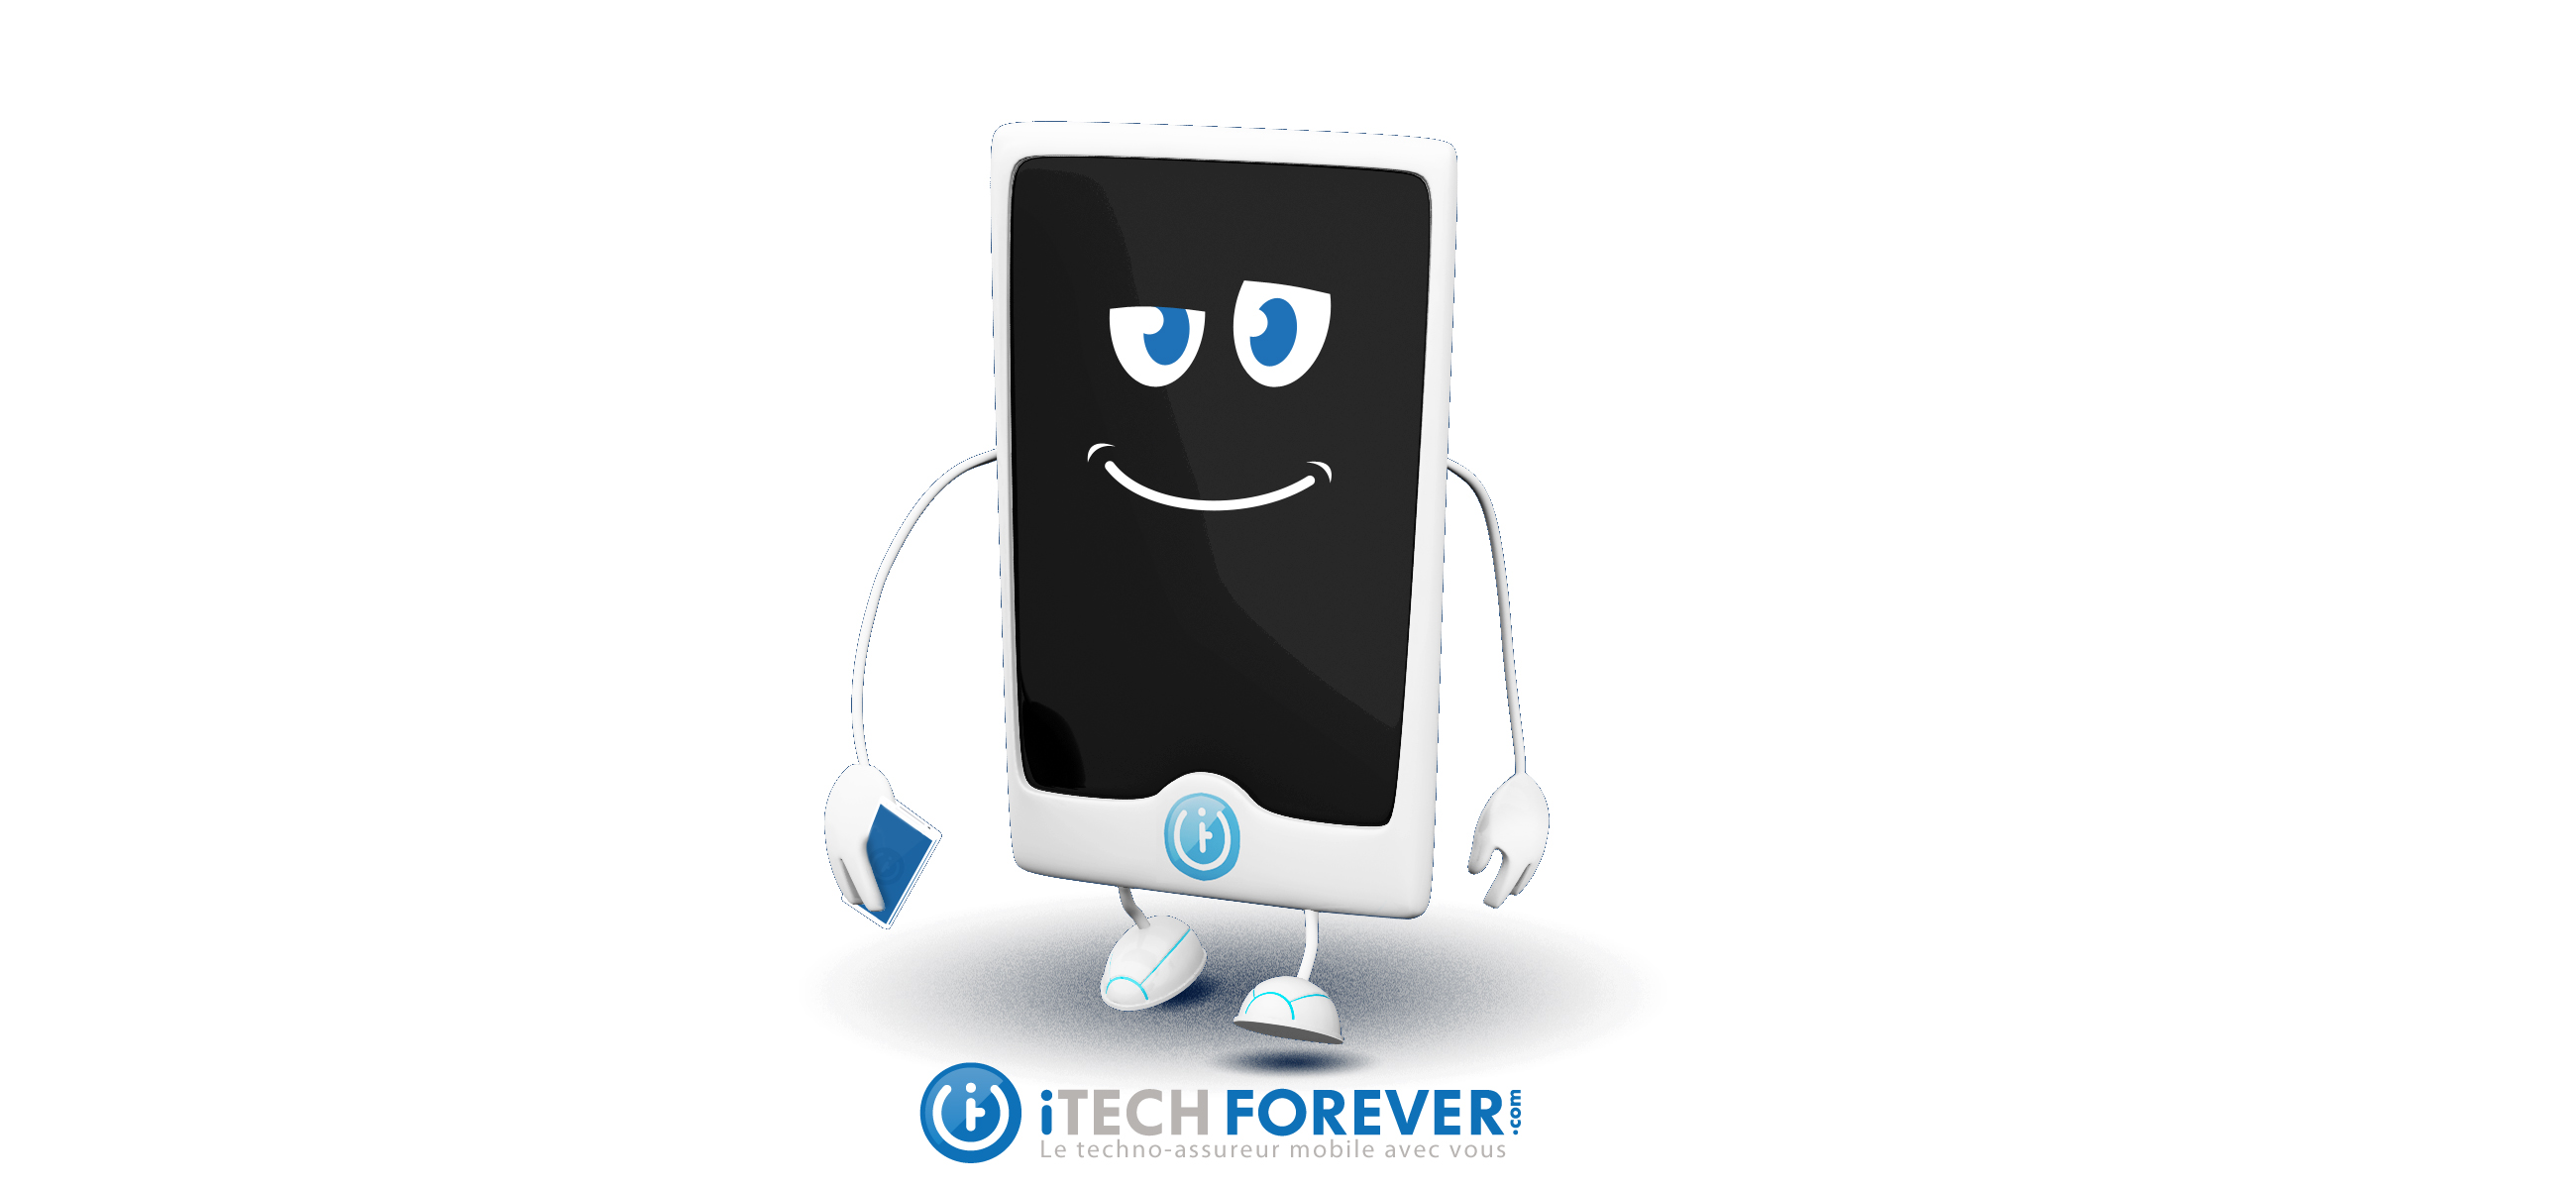 iTECHFOREVER.com, premier pure player de l'assurance de produits high-tech